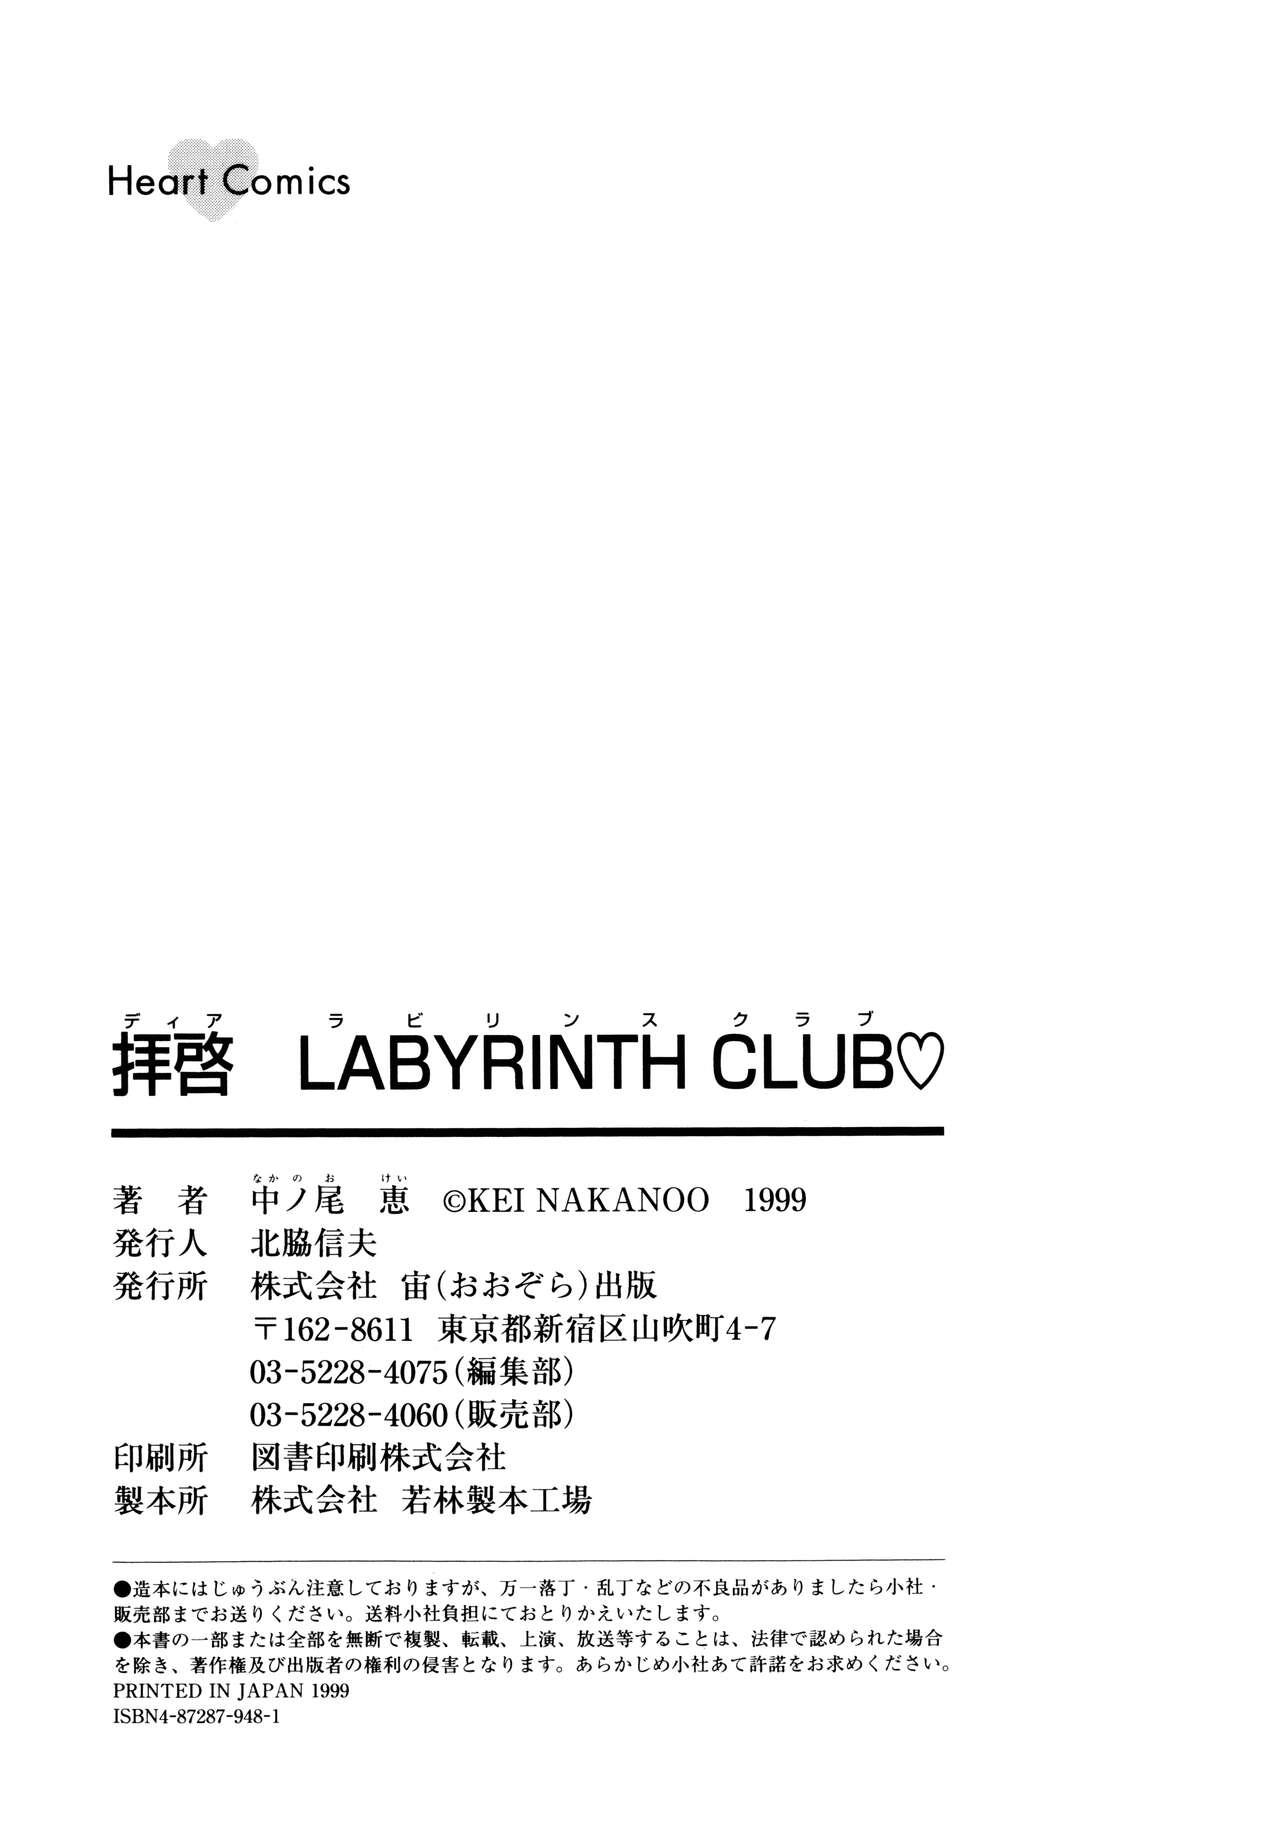 Dear Labyrinth Club 180